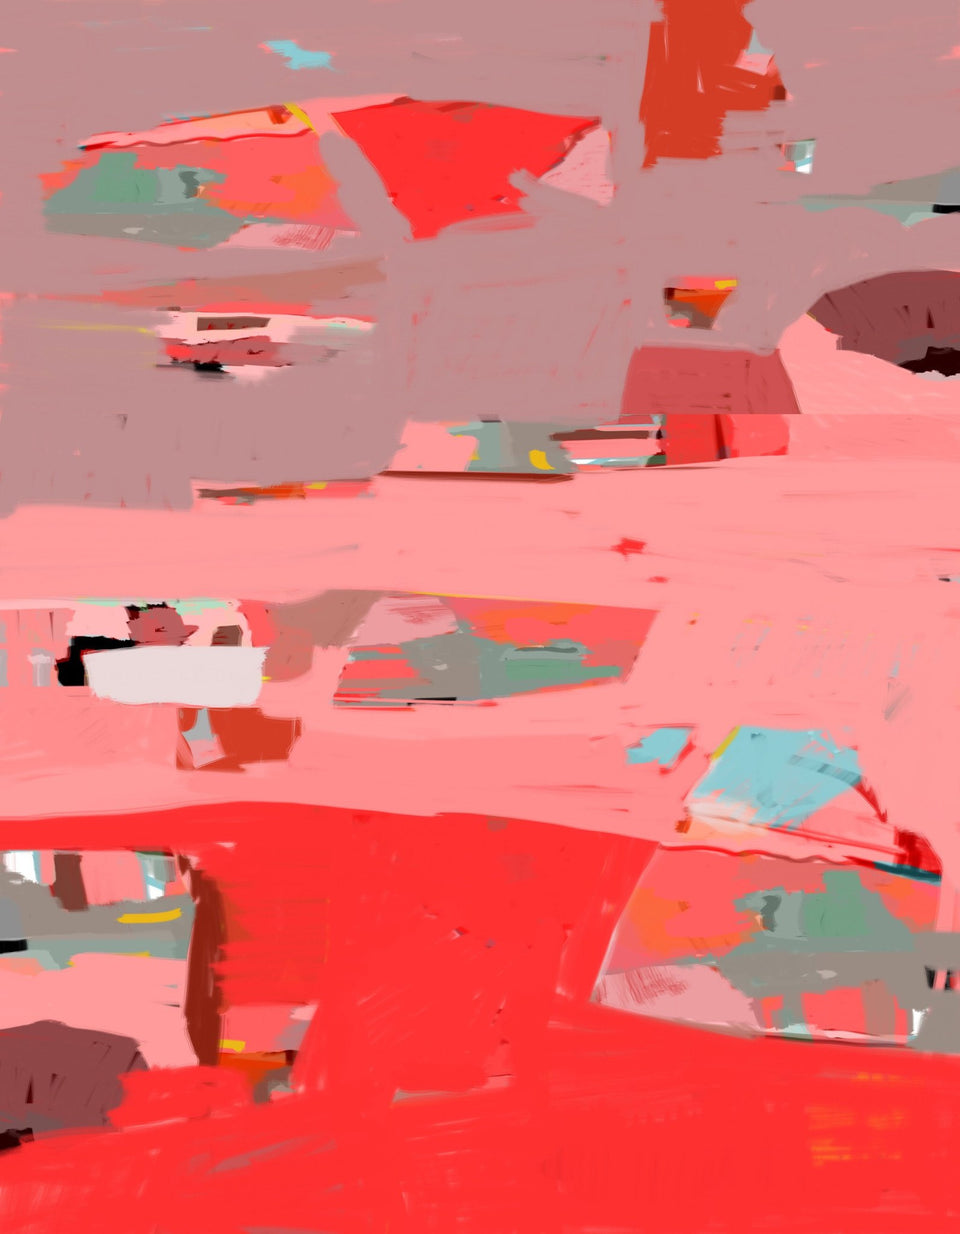  Provence Paysage abstrait rouge rose - Tableau contemporain  artiste peintre Octave Pixel  galerie TACT Art abstrait & contemporain